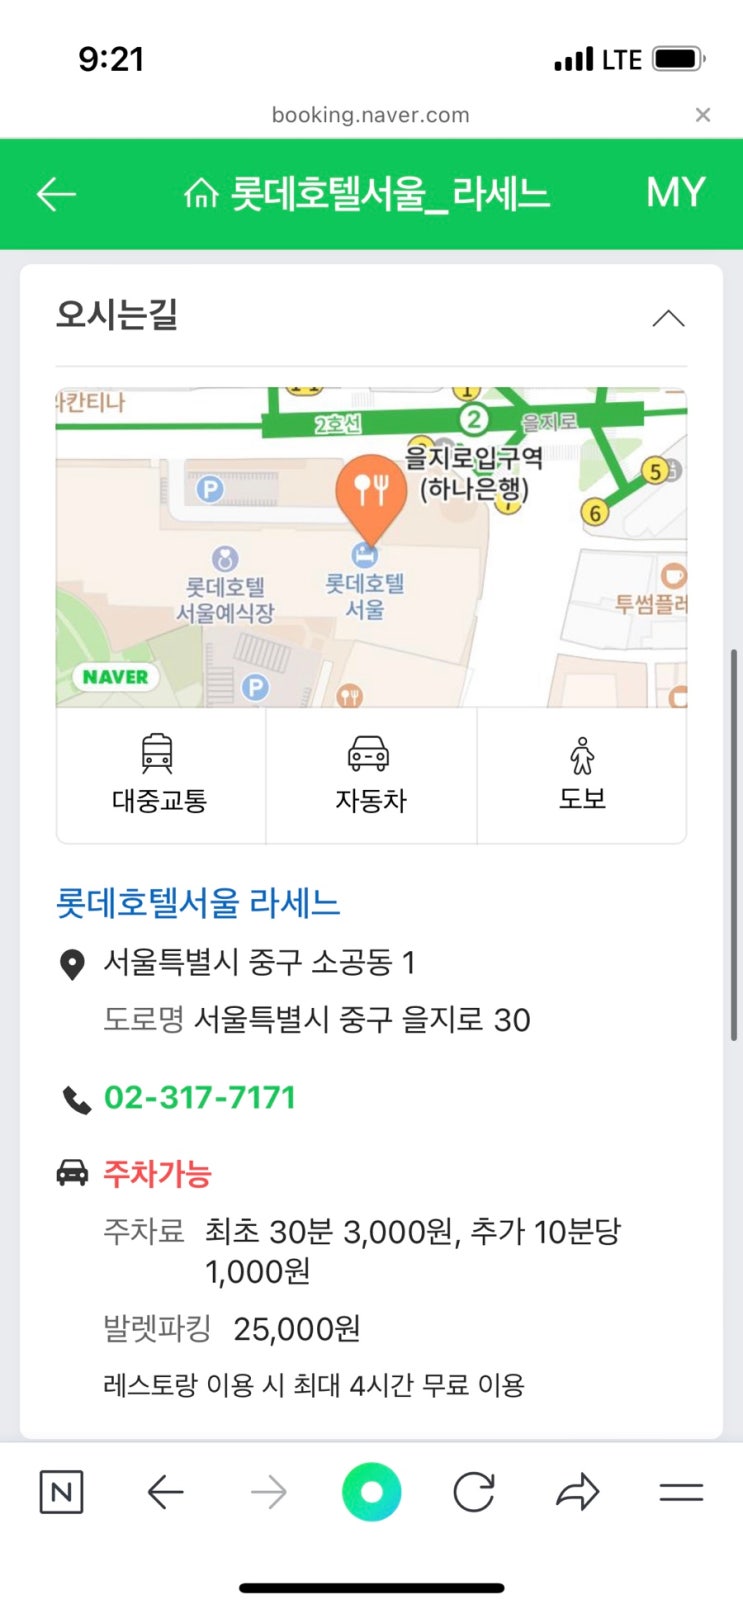 롯데호텔 라세느(중구) 평일 디너 네이버 예약 후기